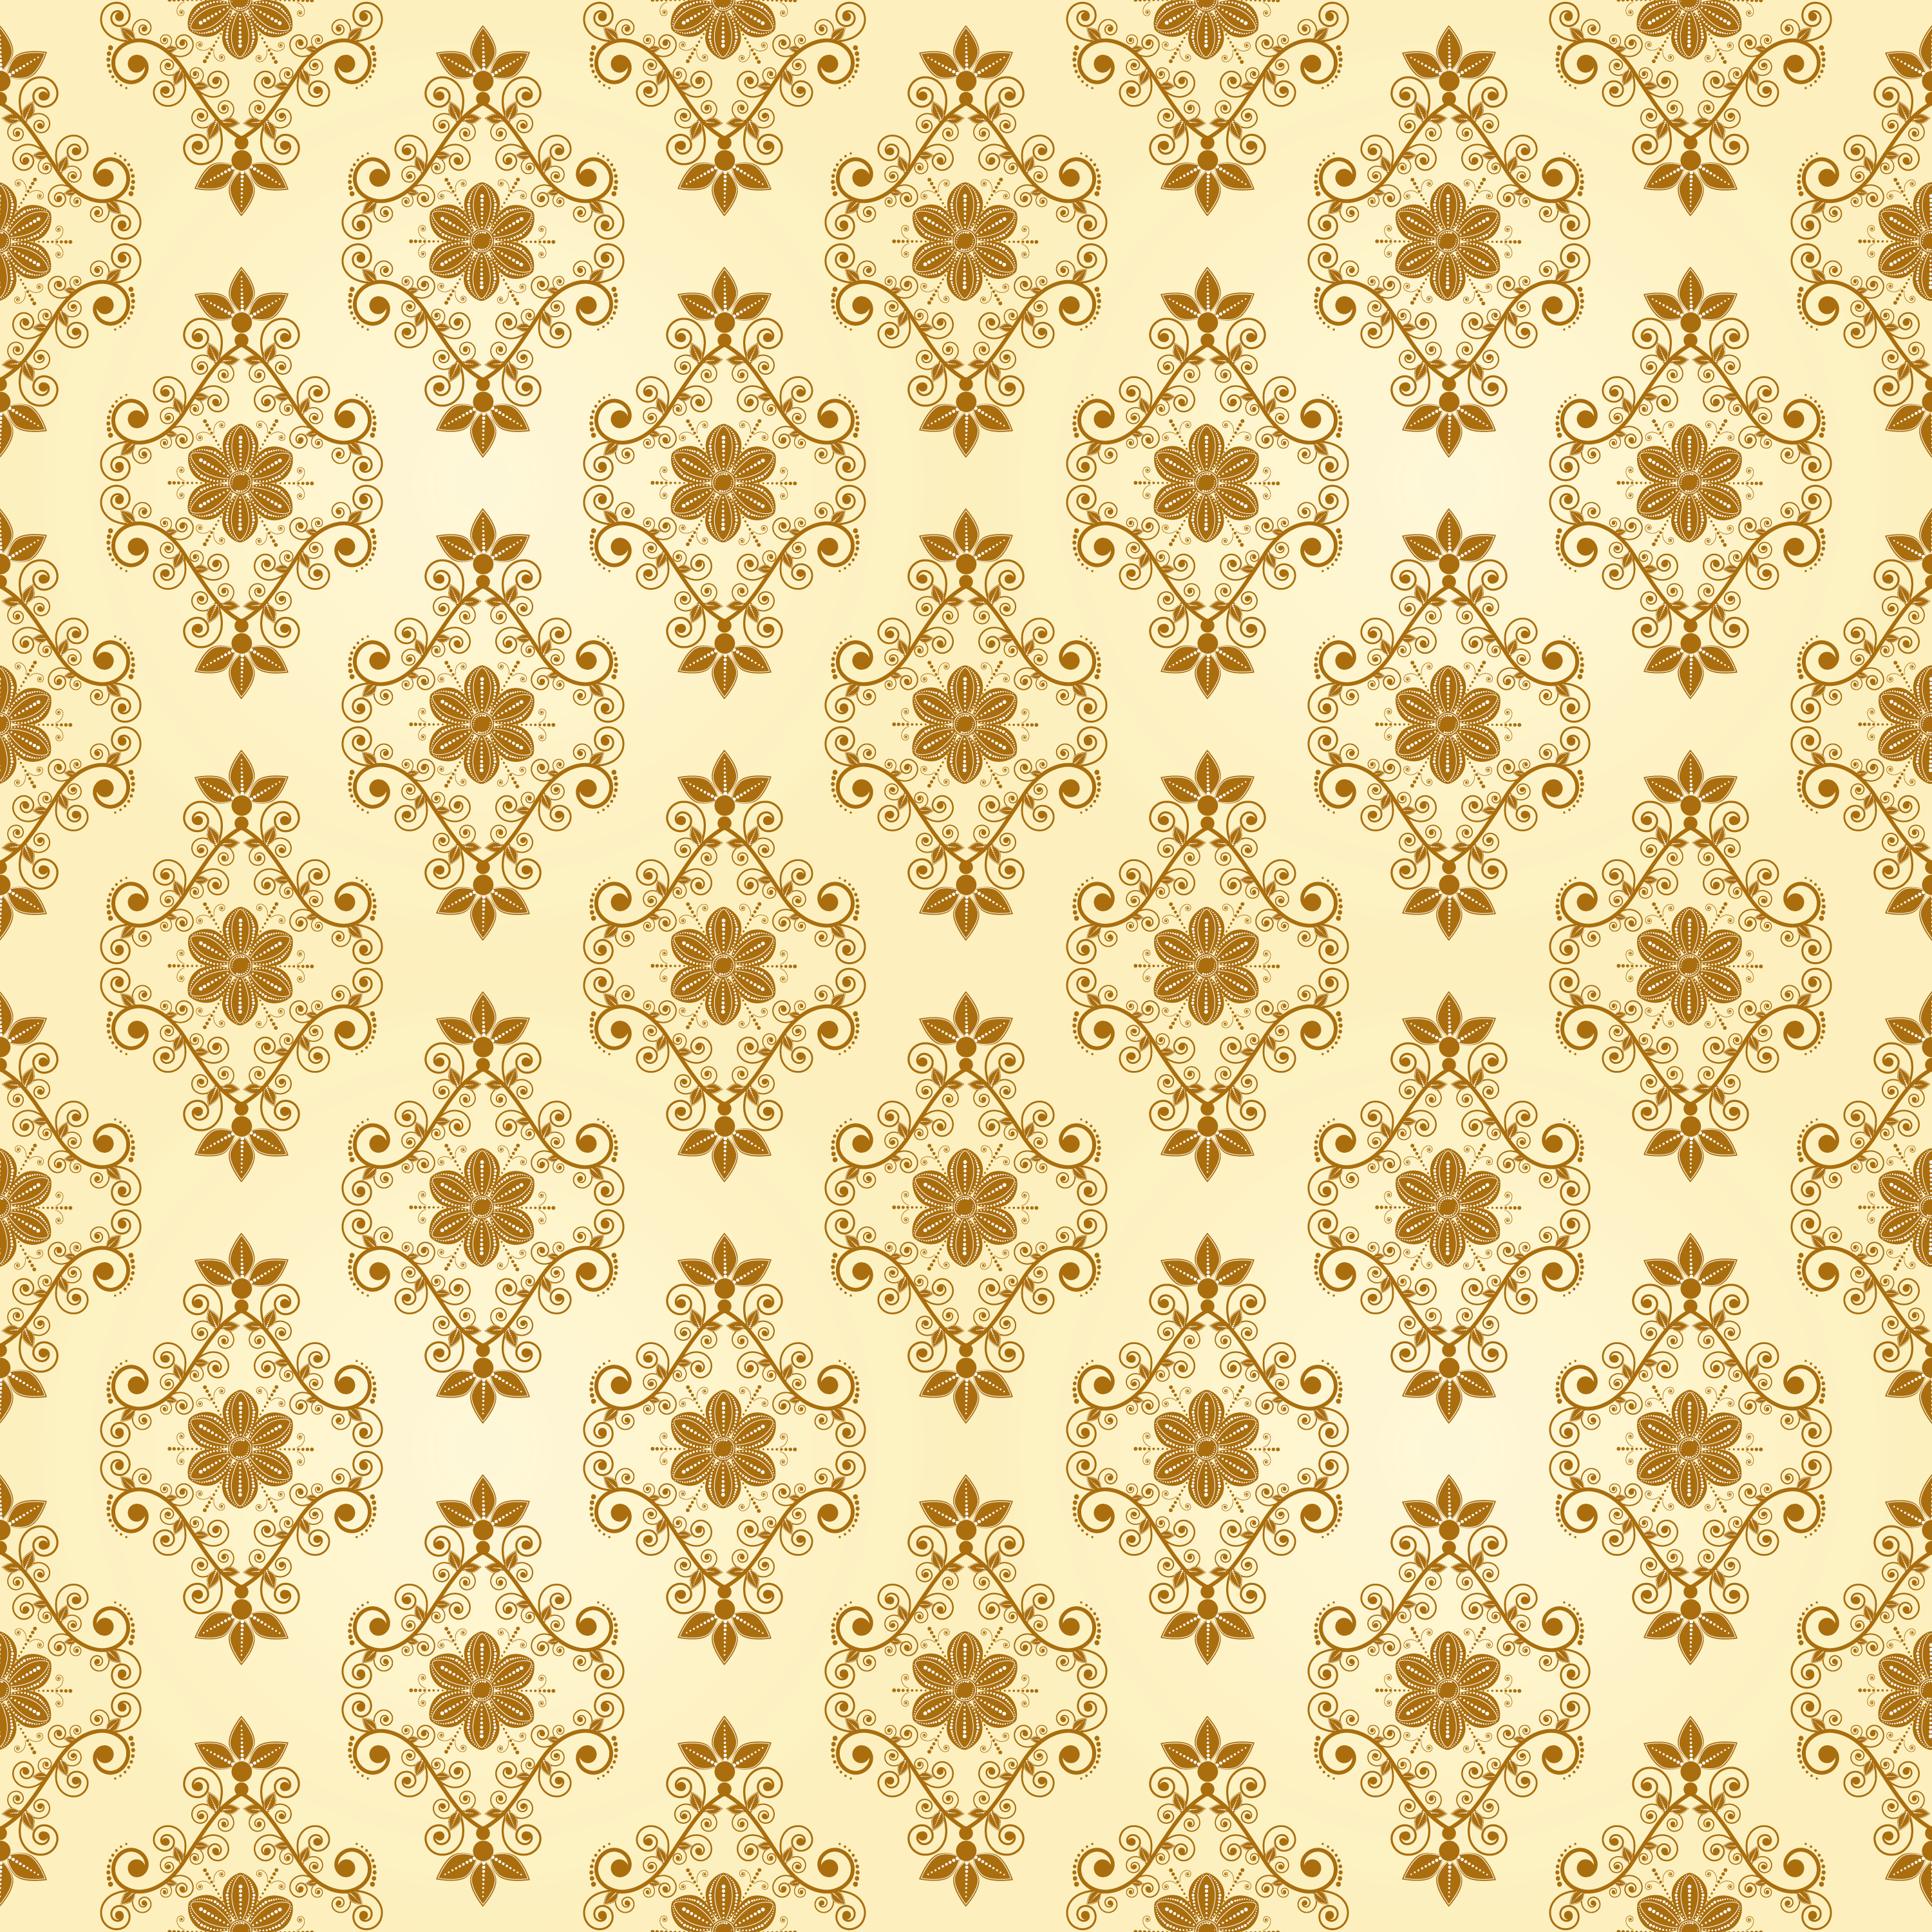 壁紙 背景イラスト 花の模様 柄 パターン No 350 エレガント 装飾 黄茶